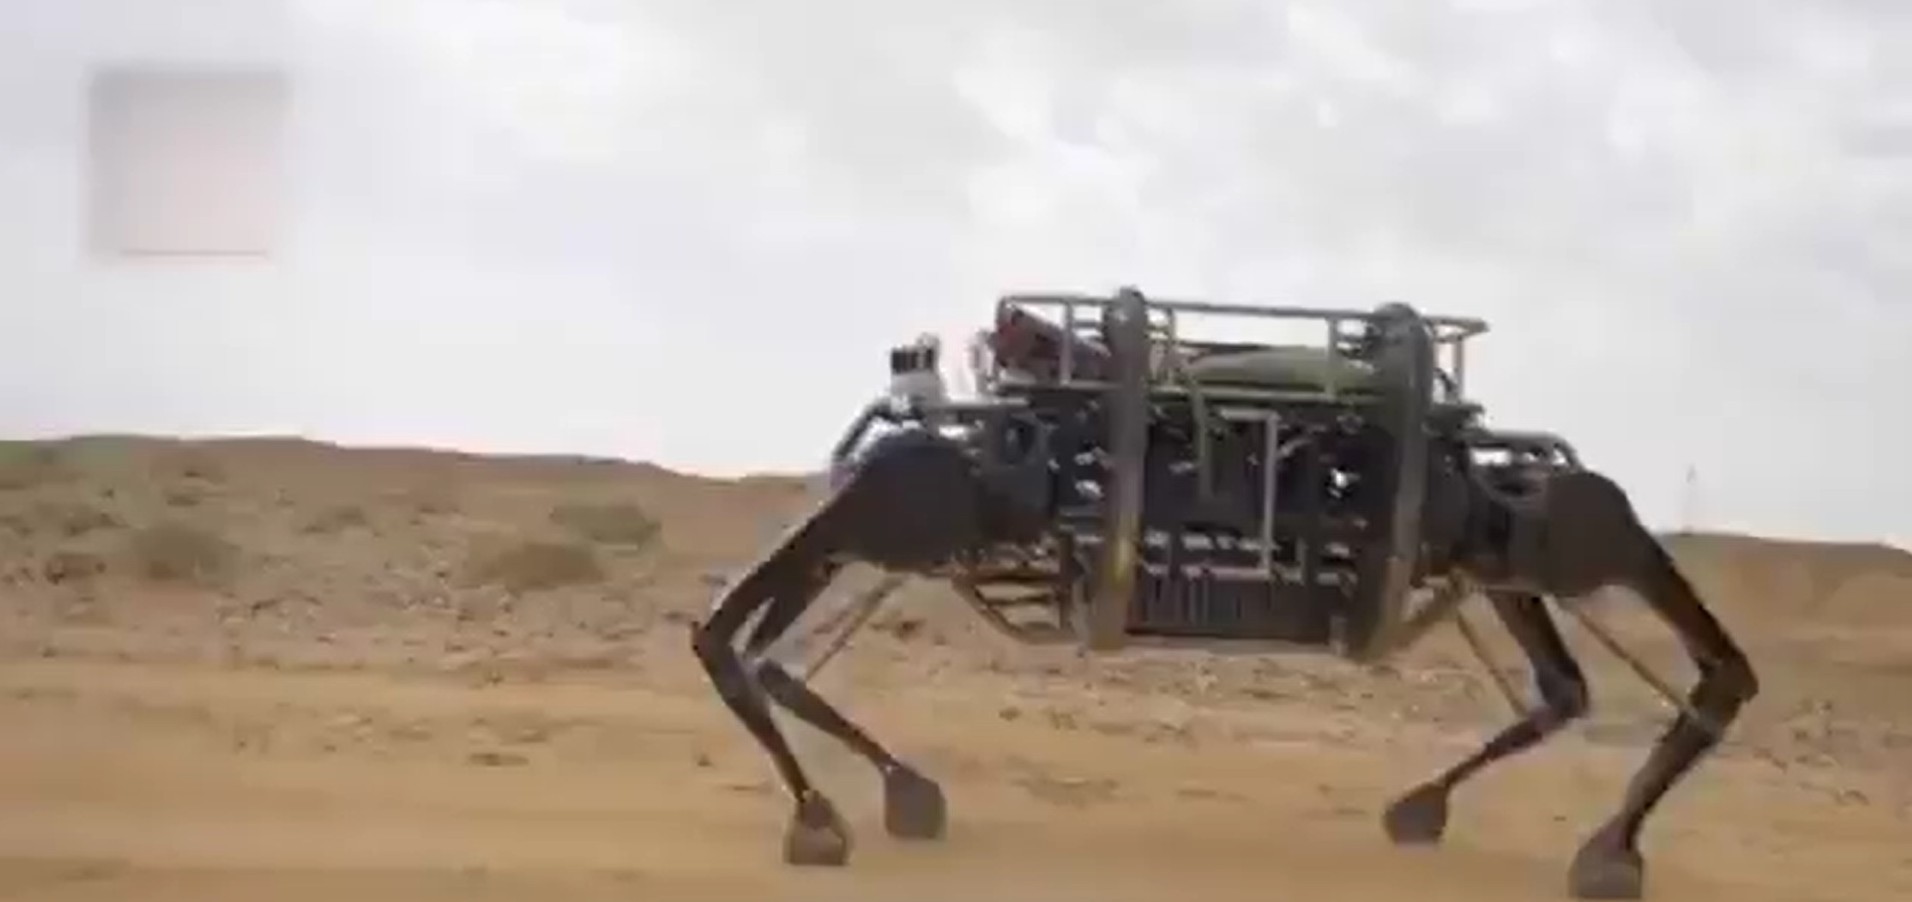 Chiński robot kroczący jest największy na świecie. I trochę przypomina jaka